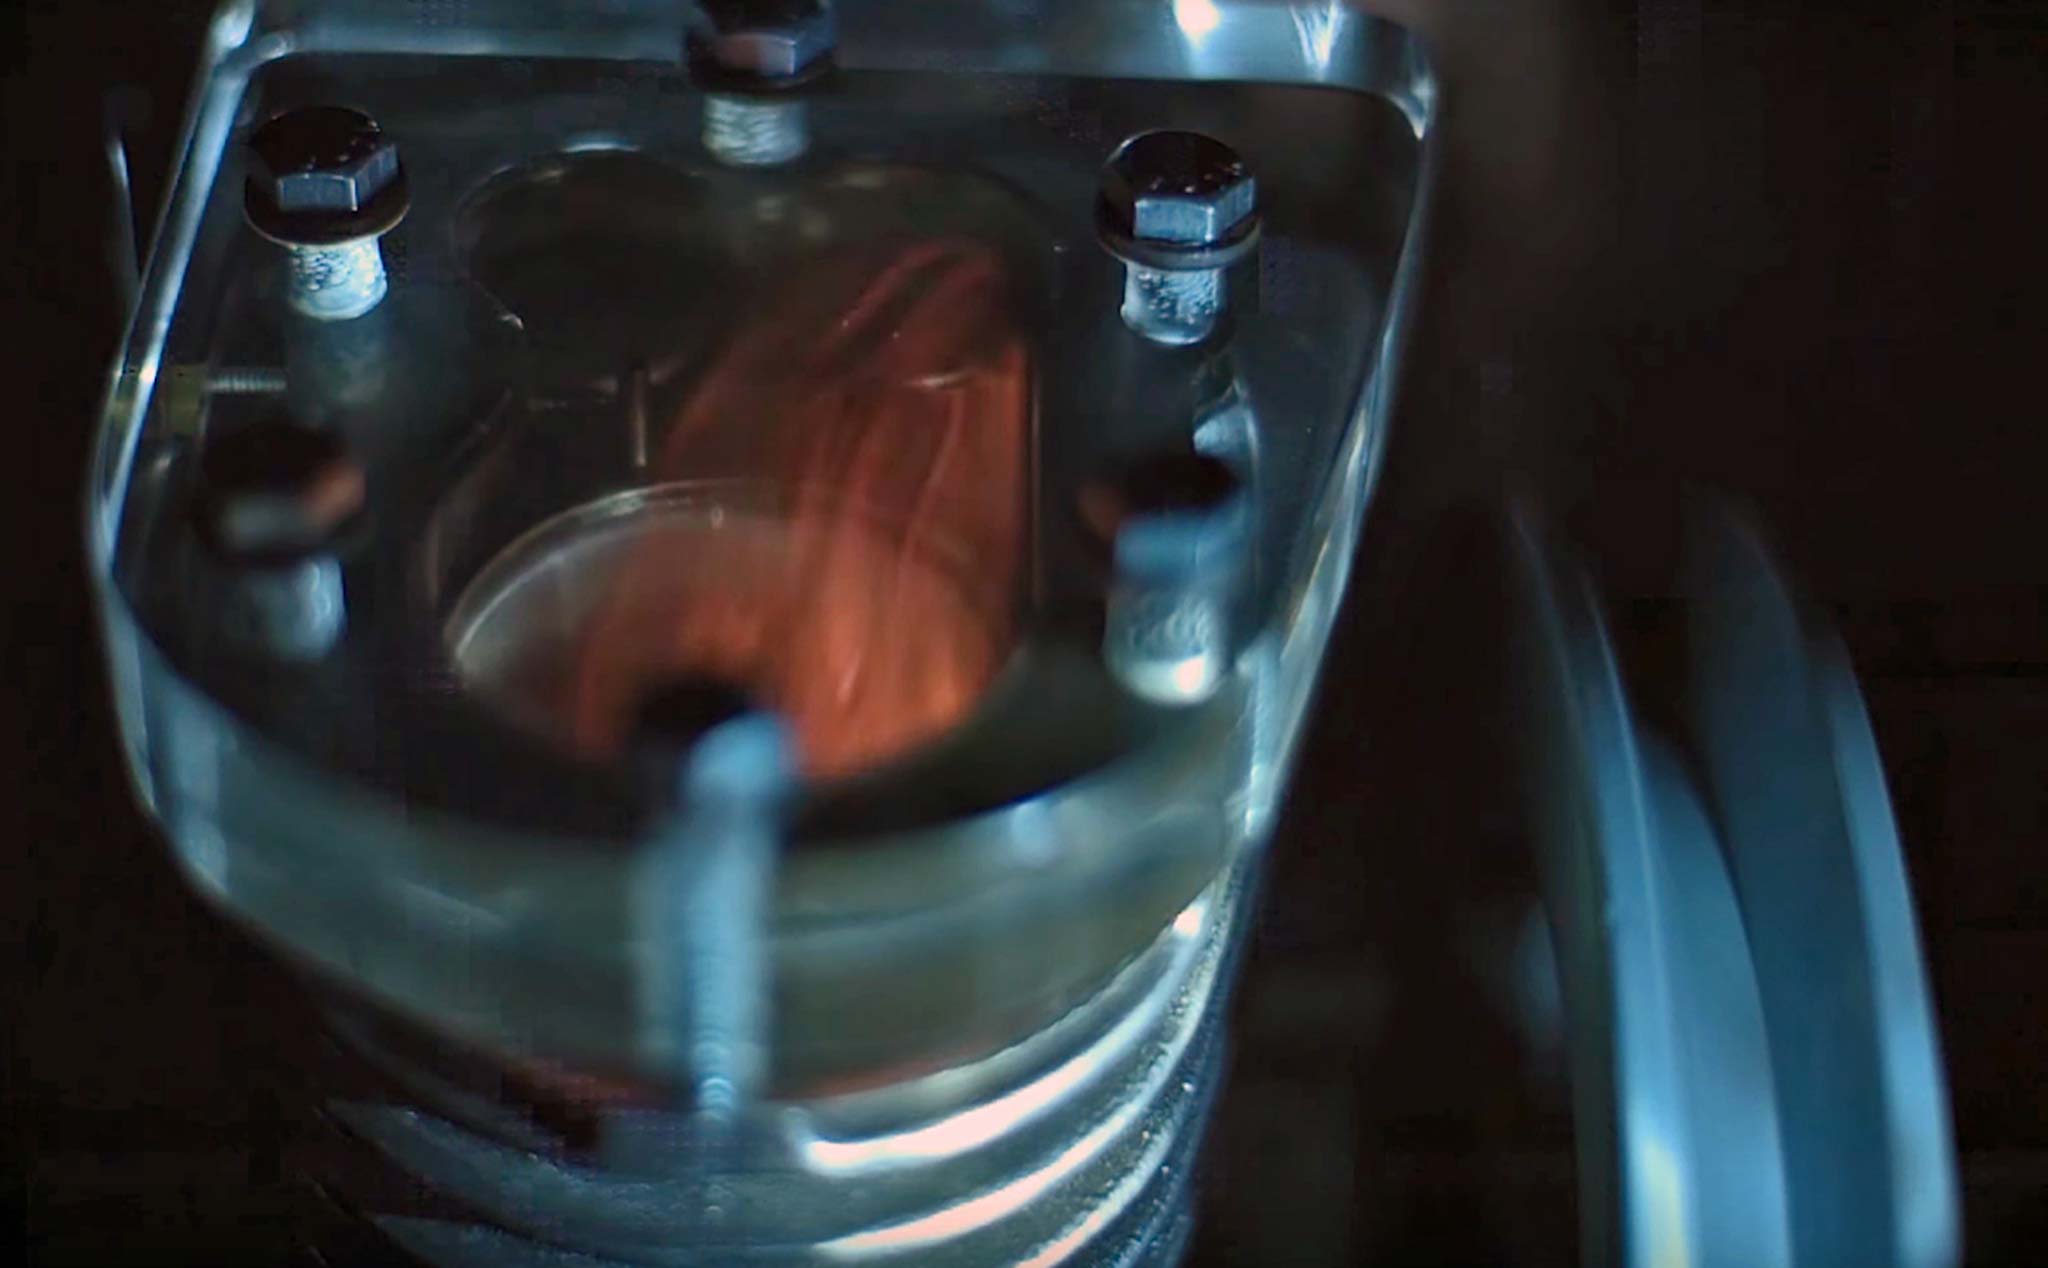 [Video] Đây là những gì diễn ra bên trong động cơ đốt trong khi vận hành